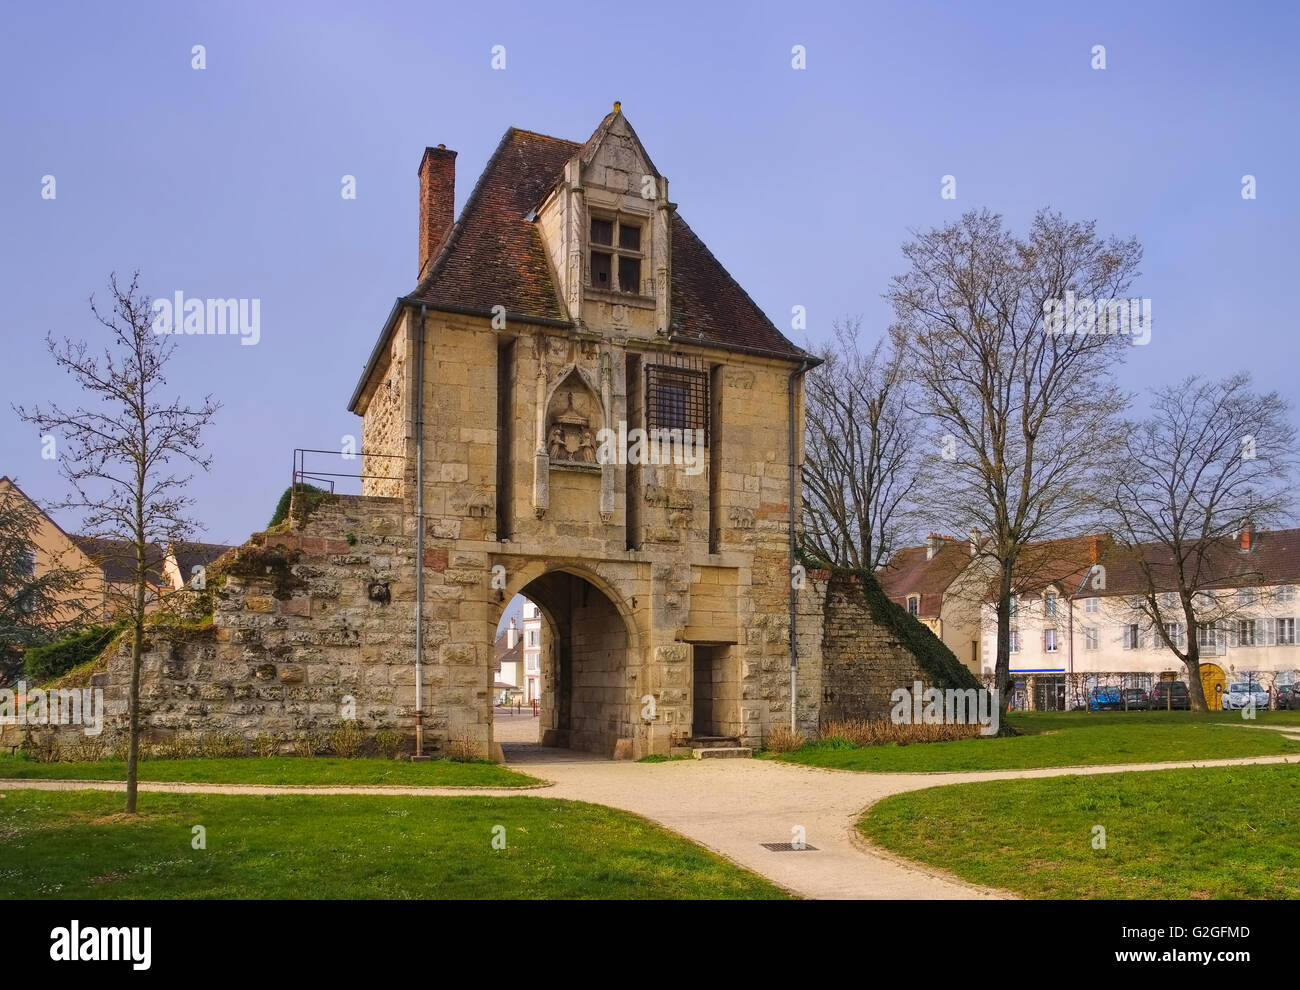 Auxonne Stadttor in Burgund, Frankreich - Auxonne town gate in Burgundy, France Stock Photo